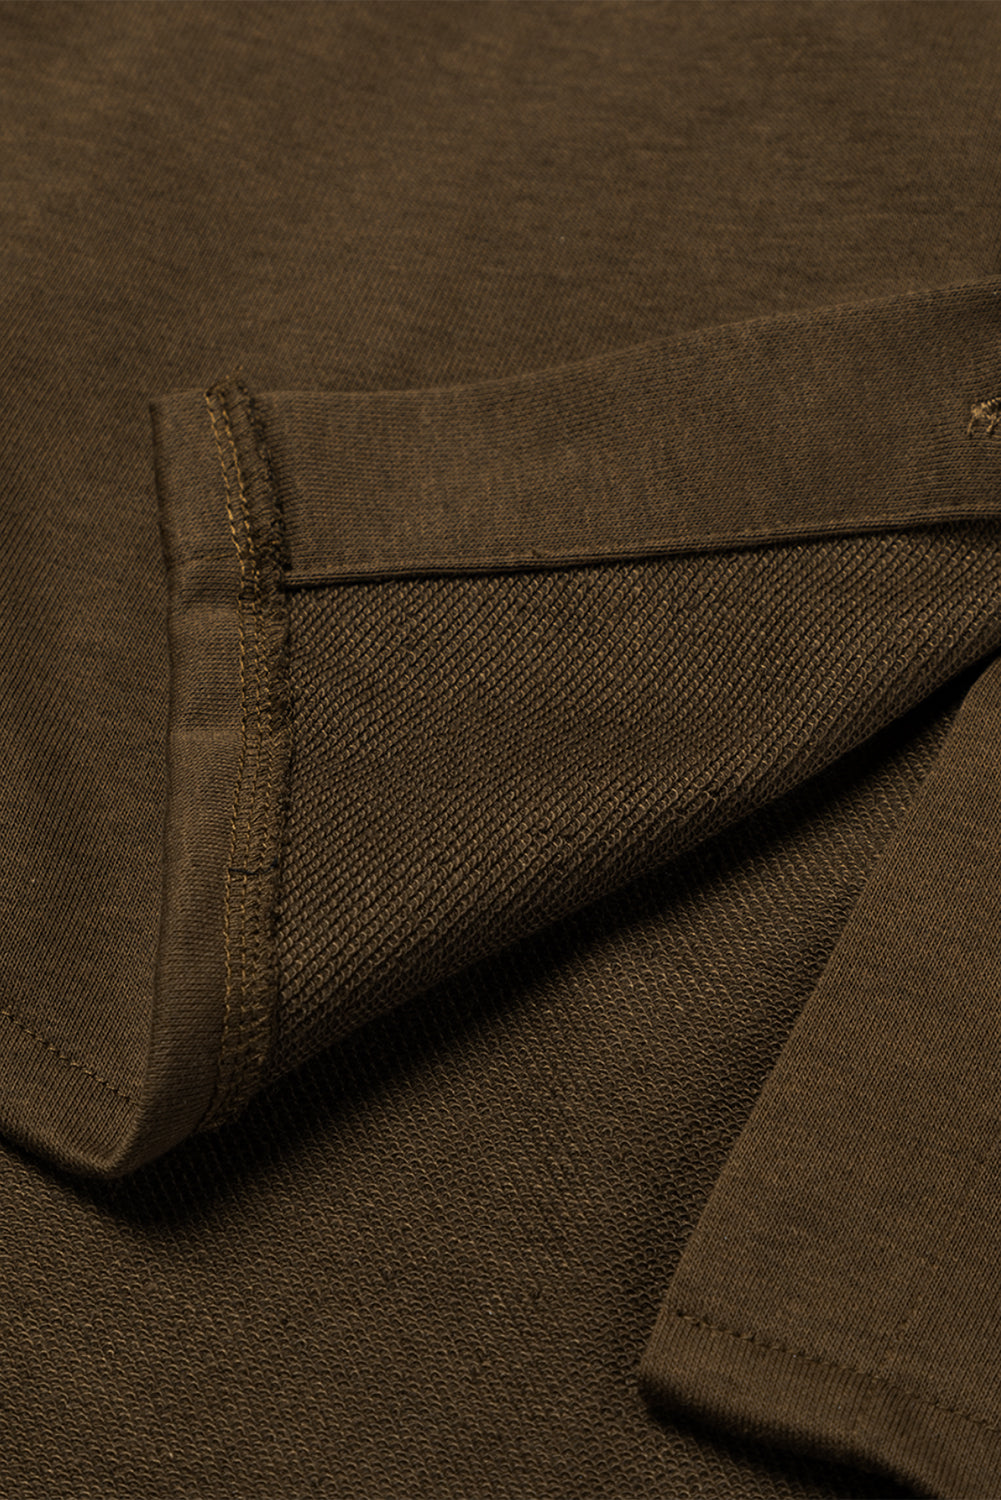 Veste à capuche marron boutonnée à manches tricotées contrastées